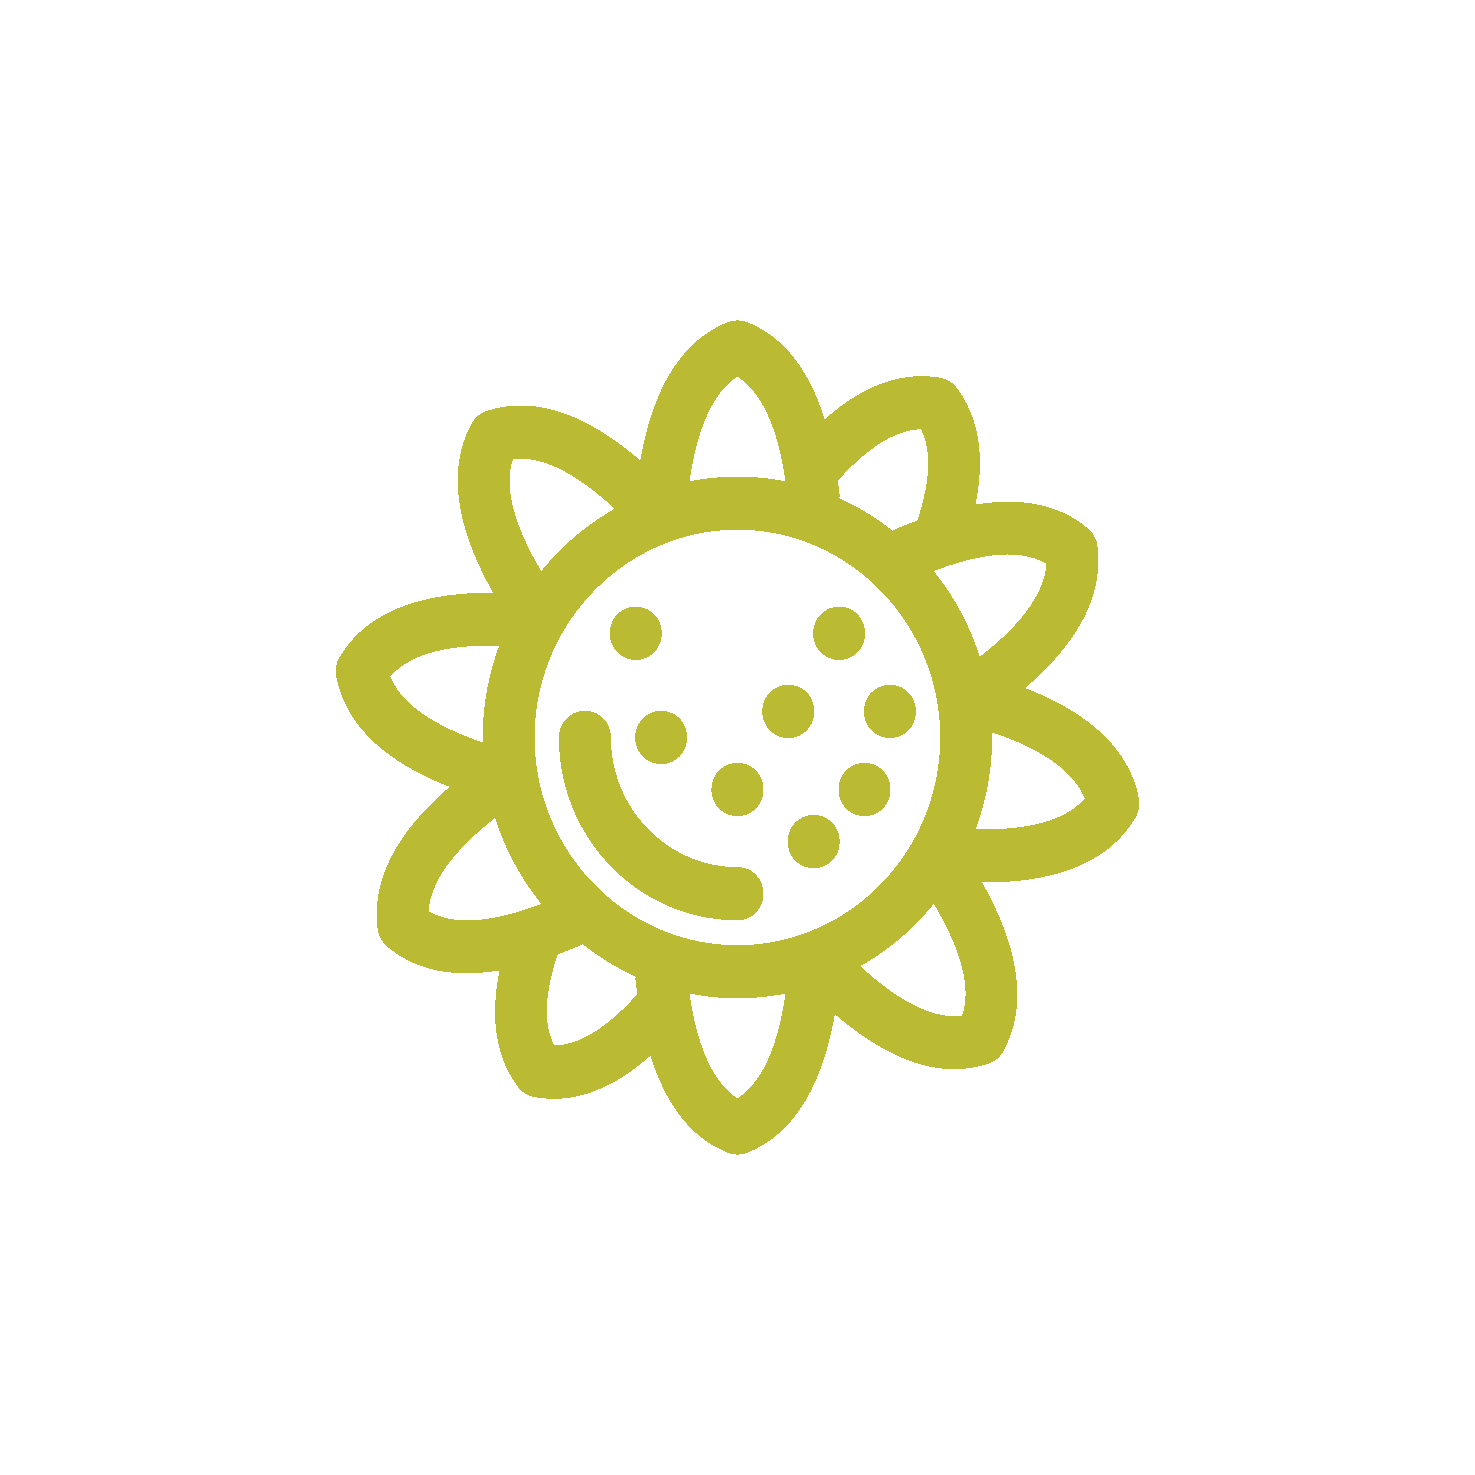 sunflower-icon-n-01-01-01-01